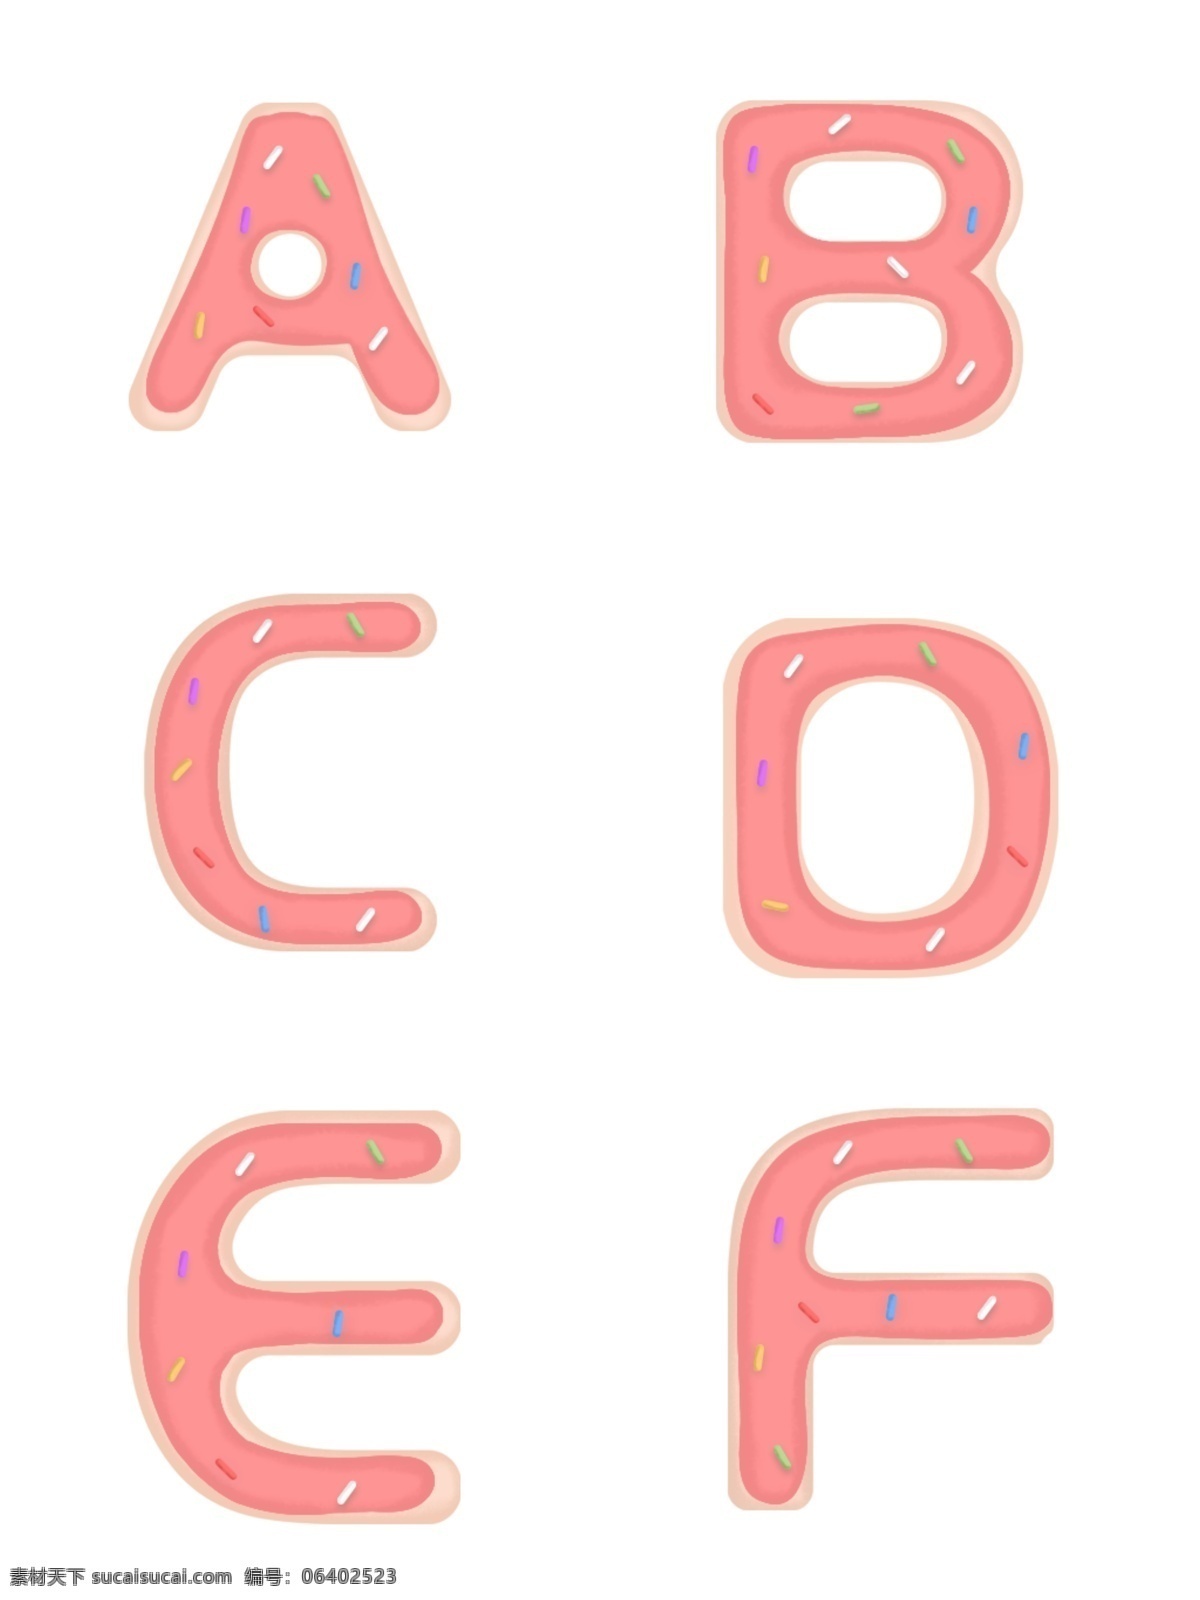 手绘 可爱 粉色 糖衣 英文 字母 元素 糖果字母 可爱字母 饼干字母 个性字母 创意字母 糖衣字母 节日英文字母